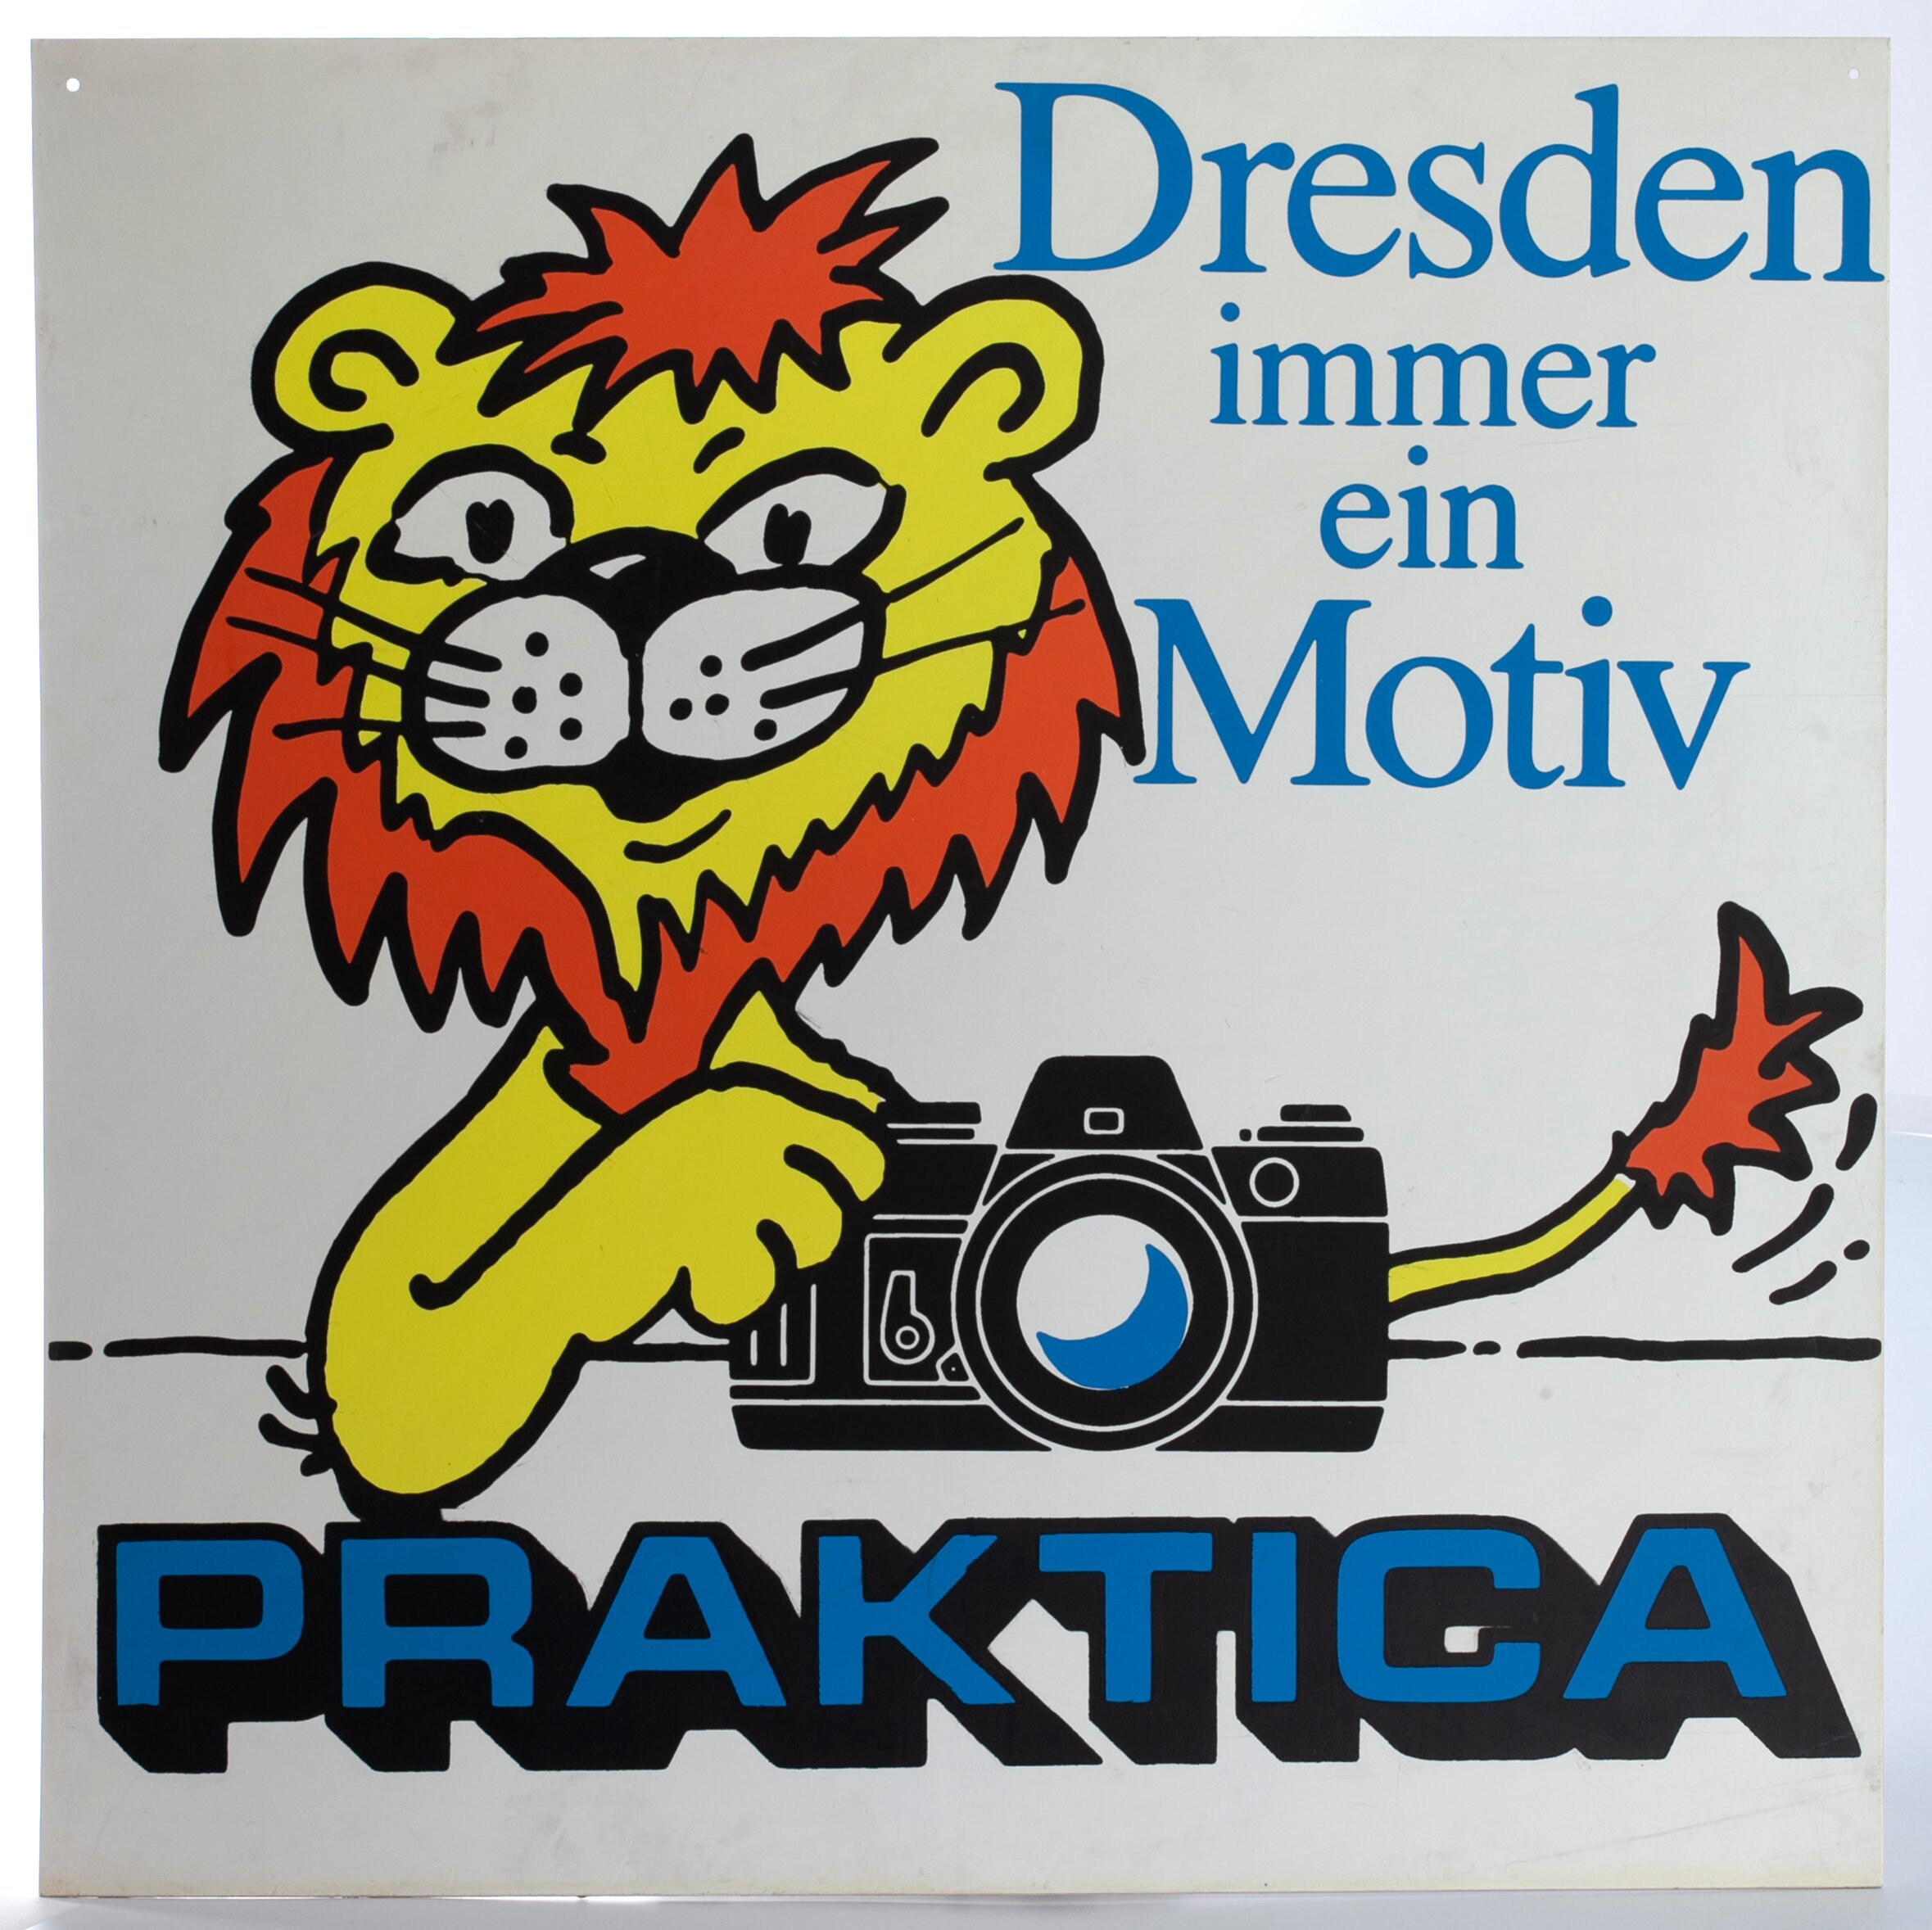 Praktica "Dresden immer ein Motiv" Praktica Werbung 90x90cm